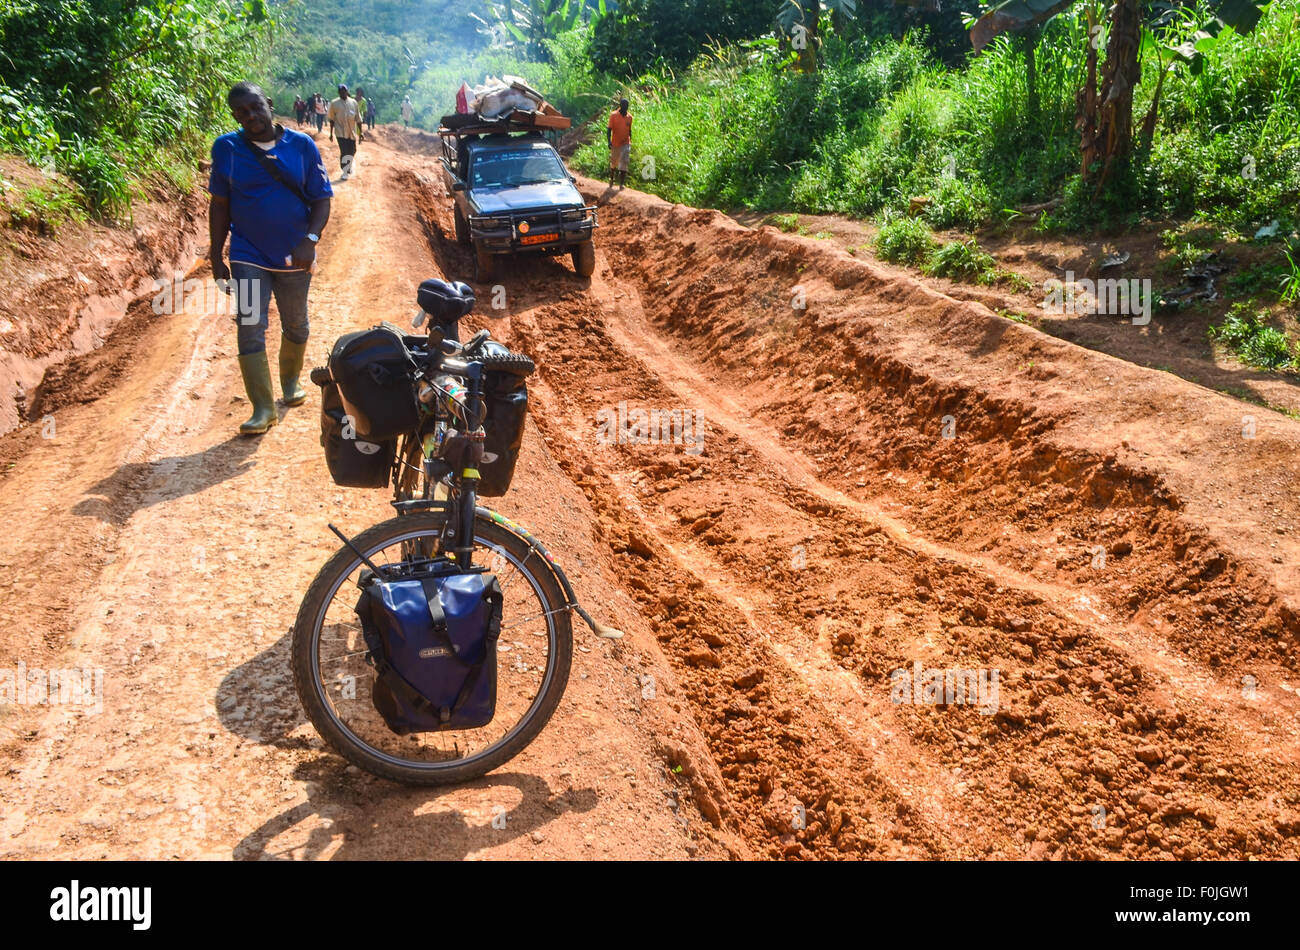 Rote Erde Feldweg in ländlichen Regionen Afrikas, Taxi entladen Passagiere eine schwierige Passage zu durchqueren Stockfoto